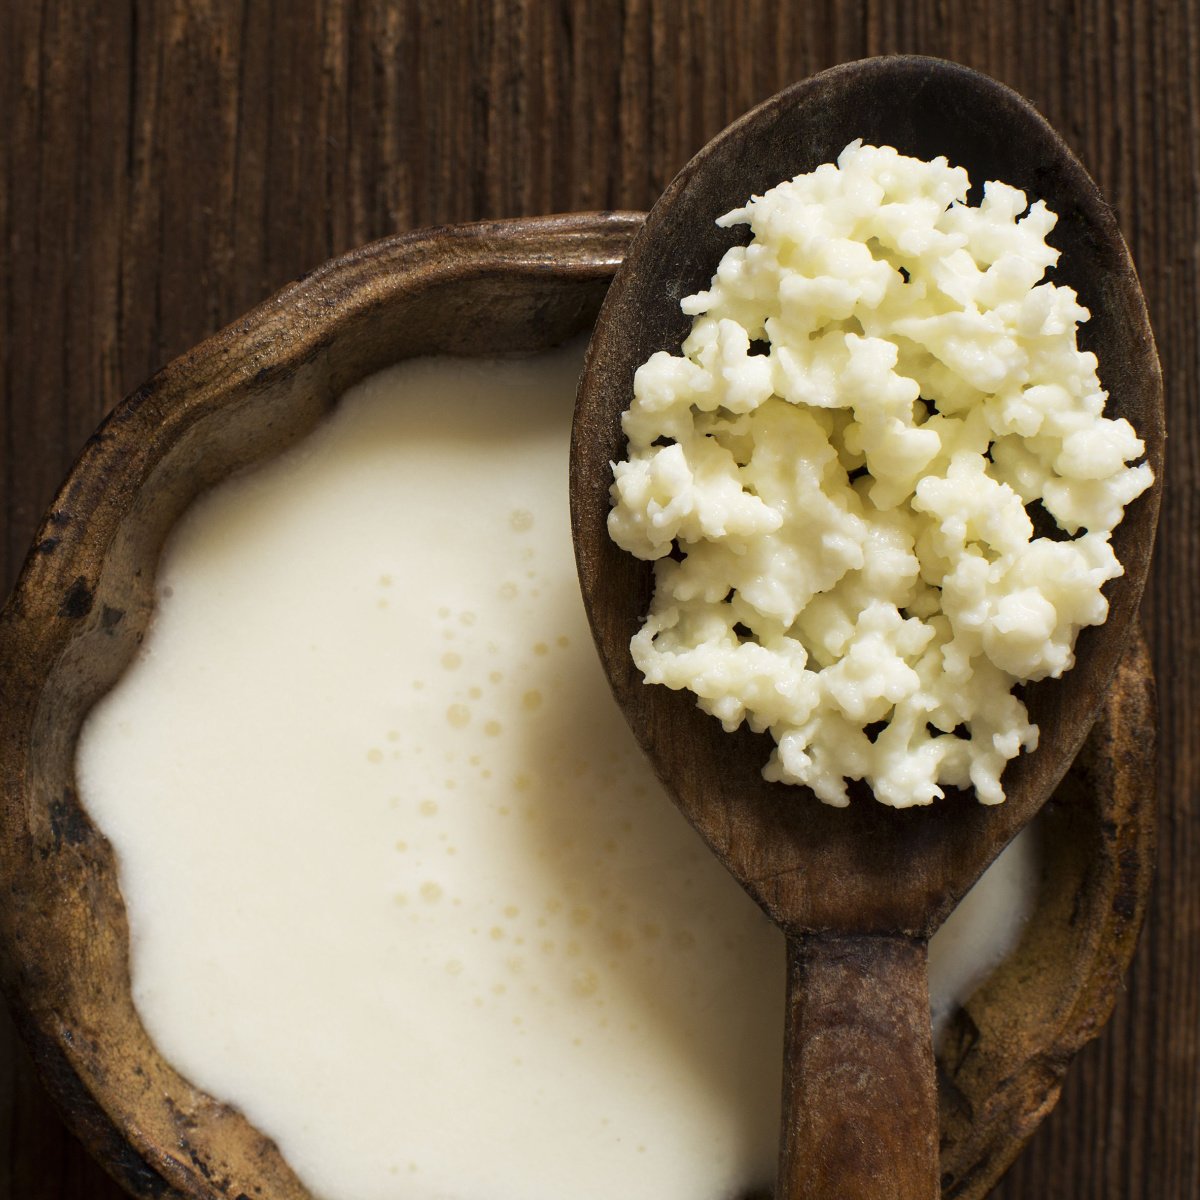 cultured milk kefir is known as fermented milk